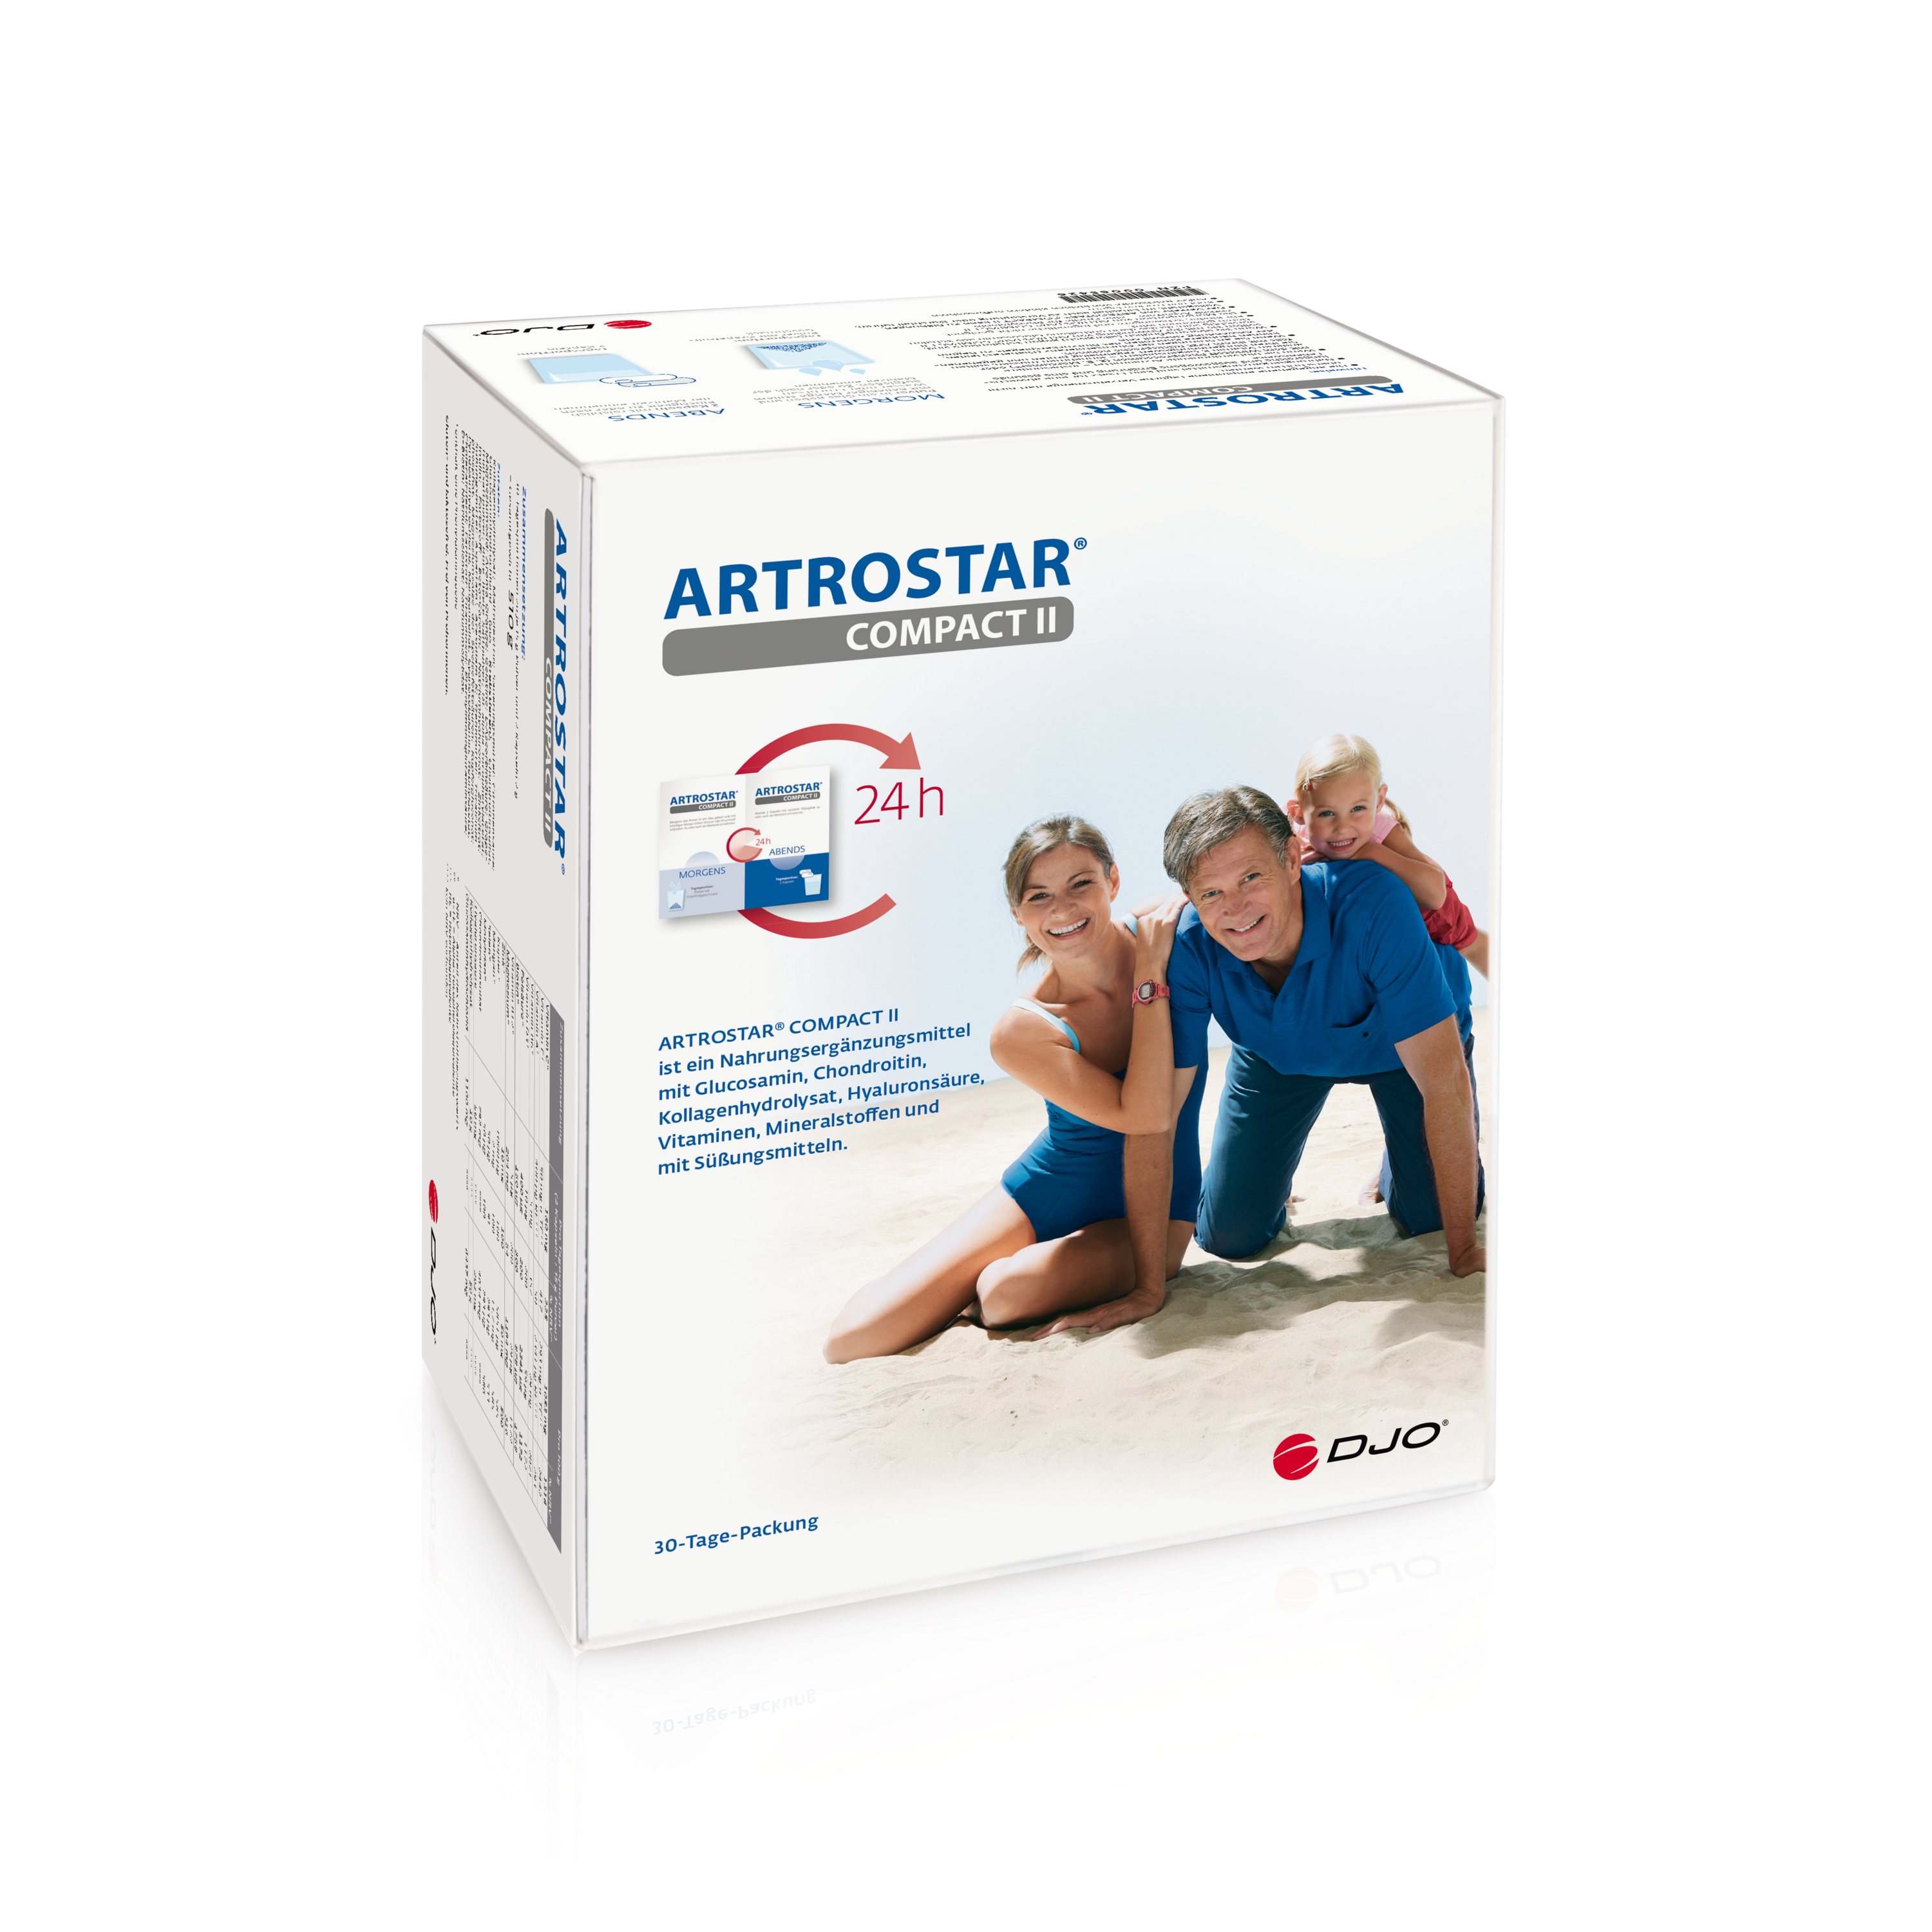 Produktbild ARTROSTAR® Compact II,
Verpackung Schachtel